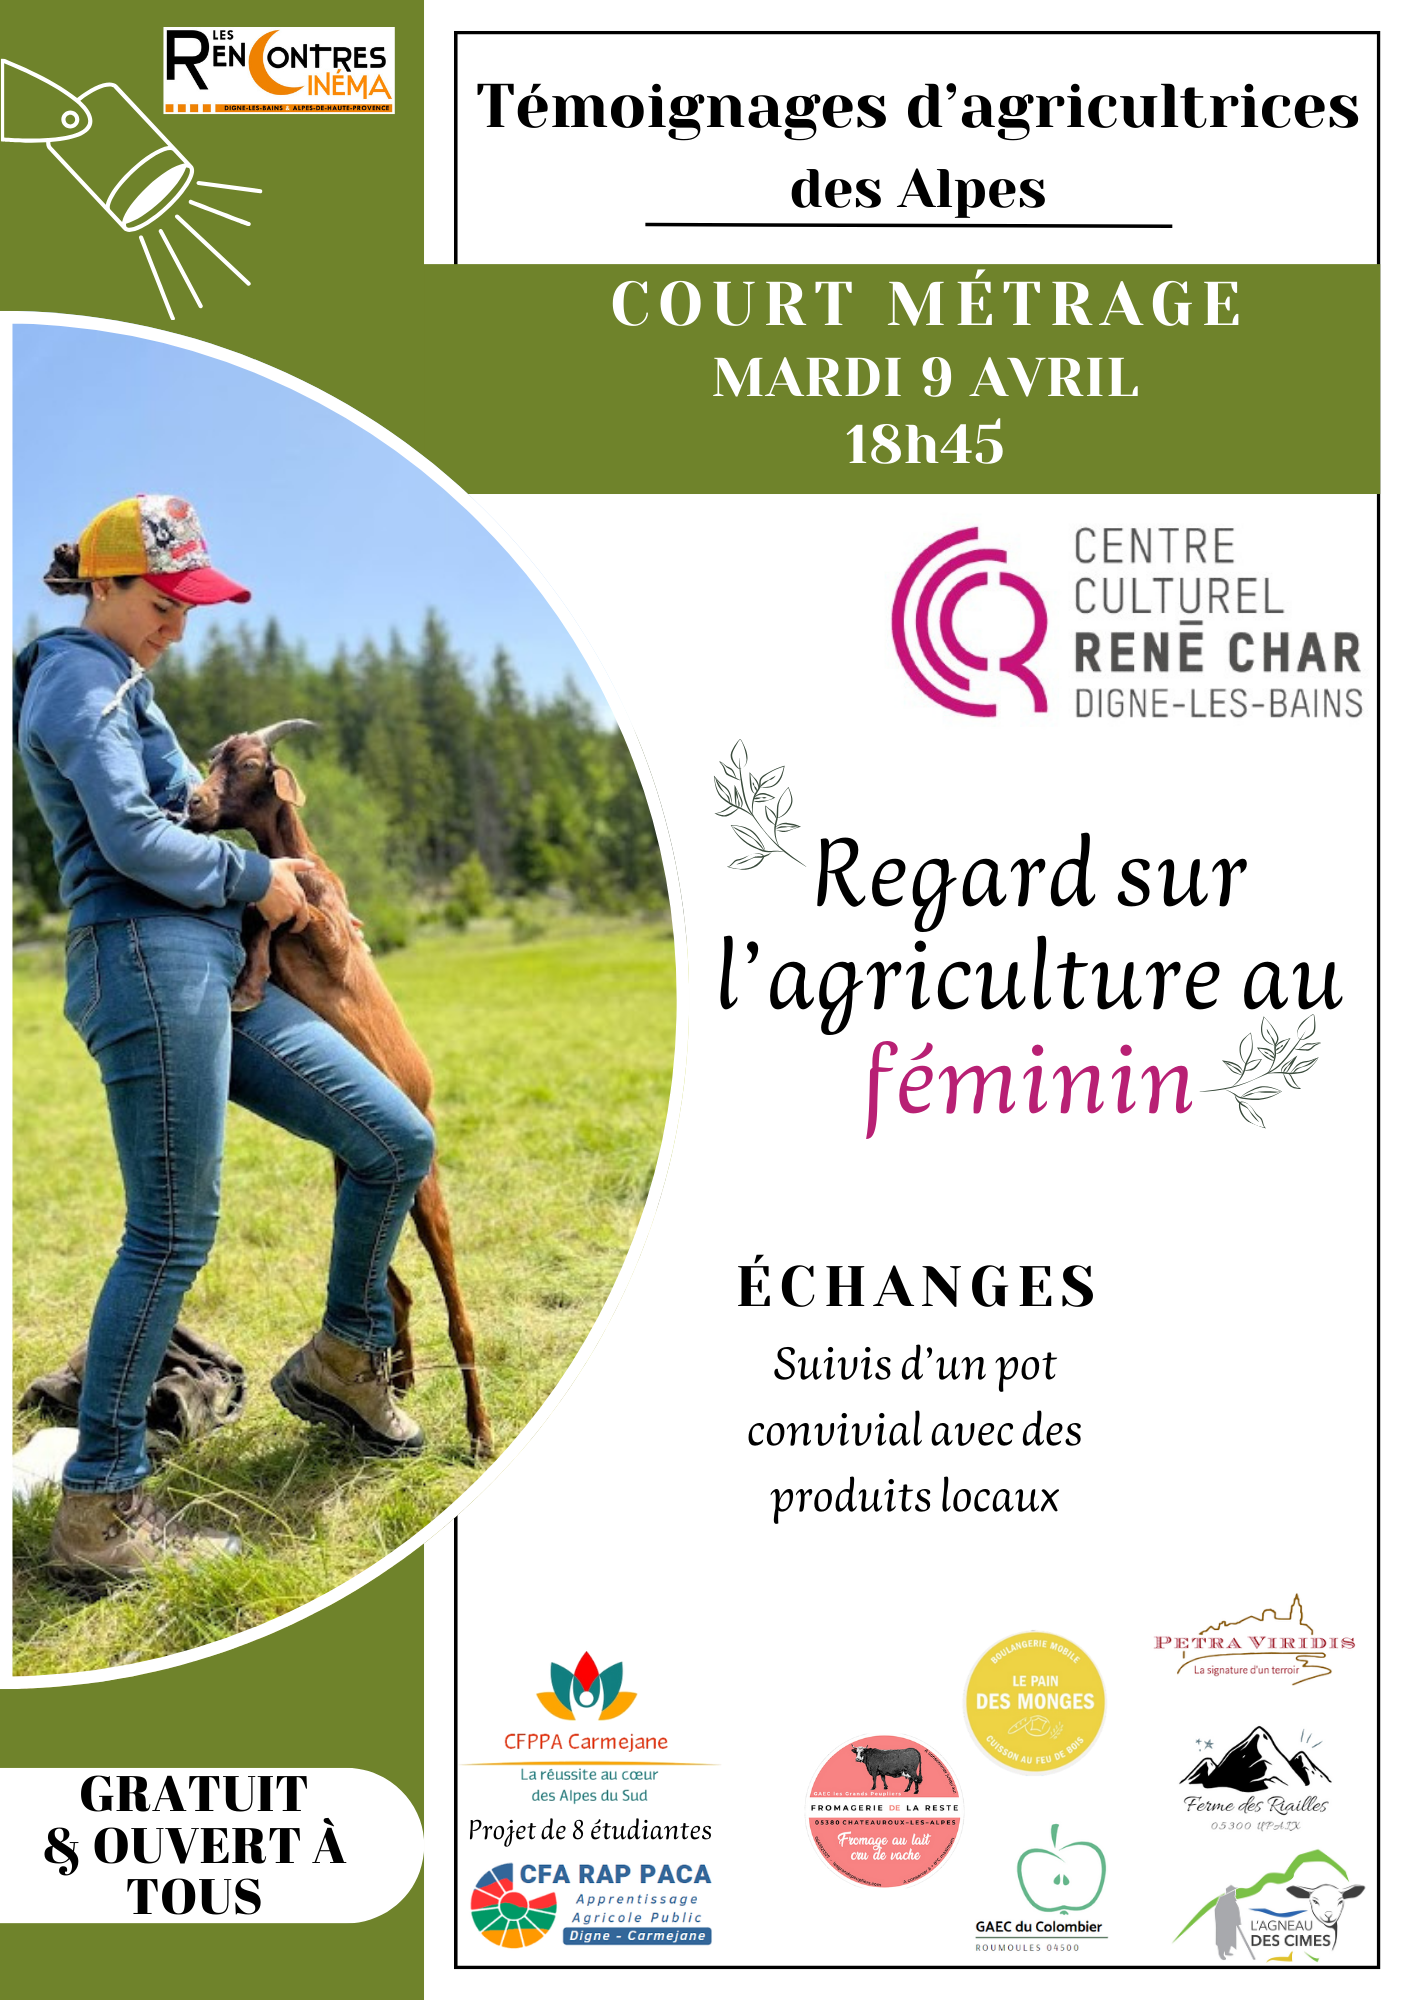 04 - Court métrage Regard sur l'agriculture au féminin - Chambres d'agriculture Provence-Alpes-Côte d'Azur